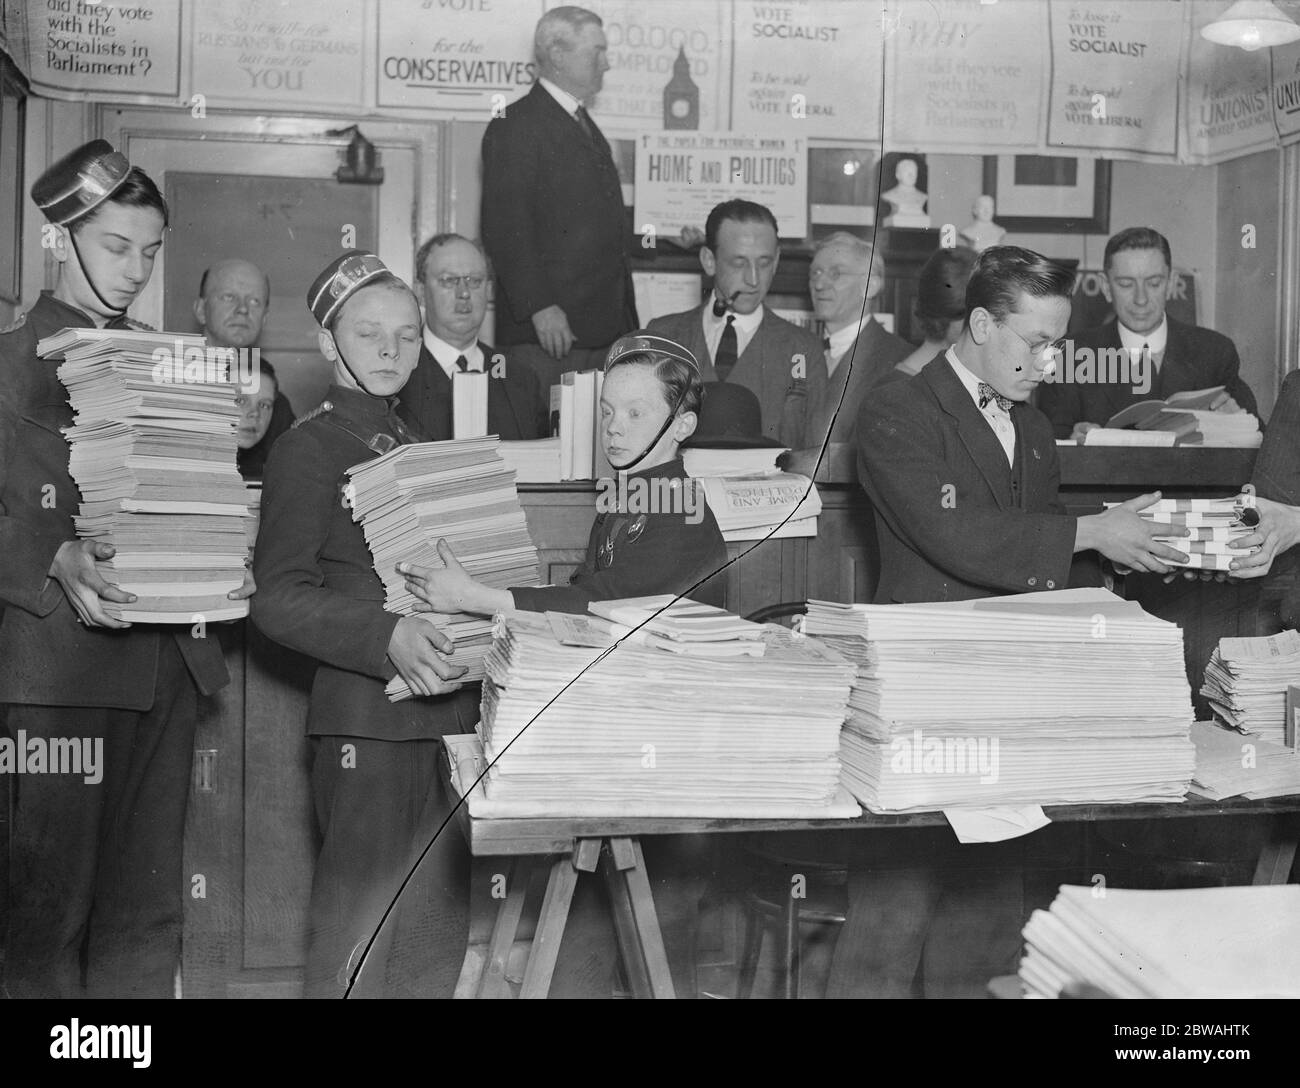 Elezione generale , ottobre 1924 , scene di occupato presso la sede unionista 14 ottobre 1924 Foto Stock